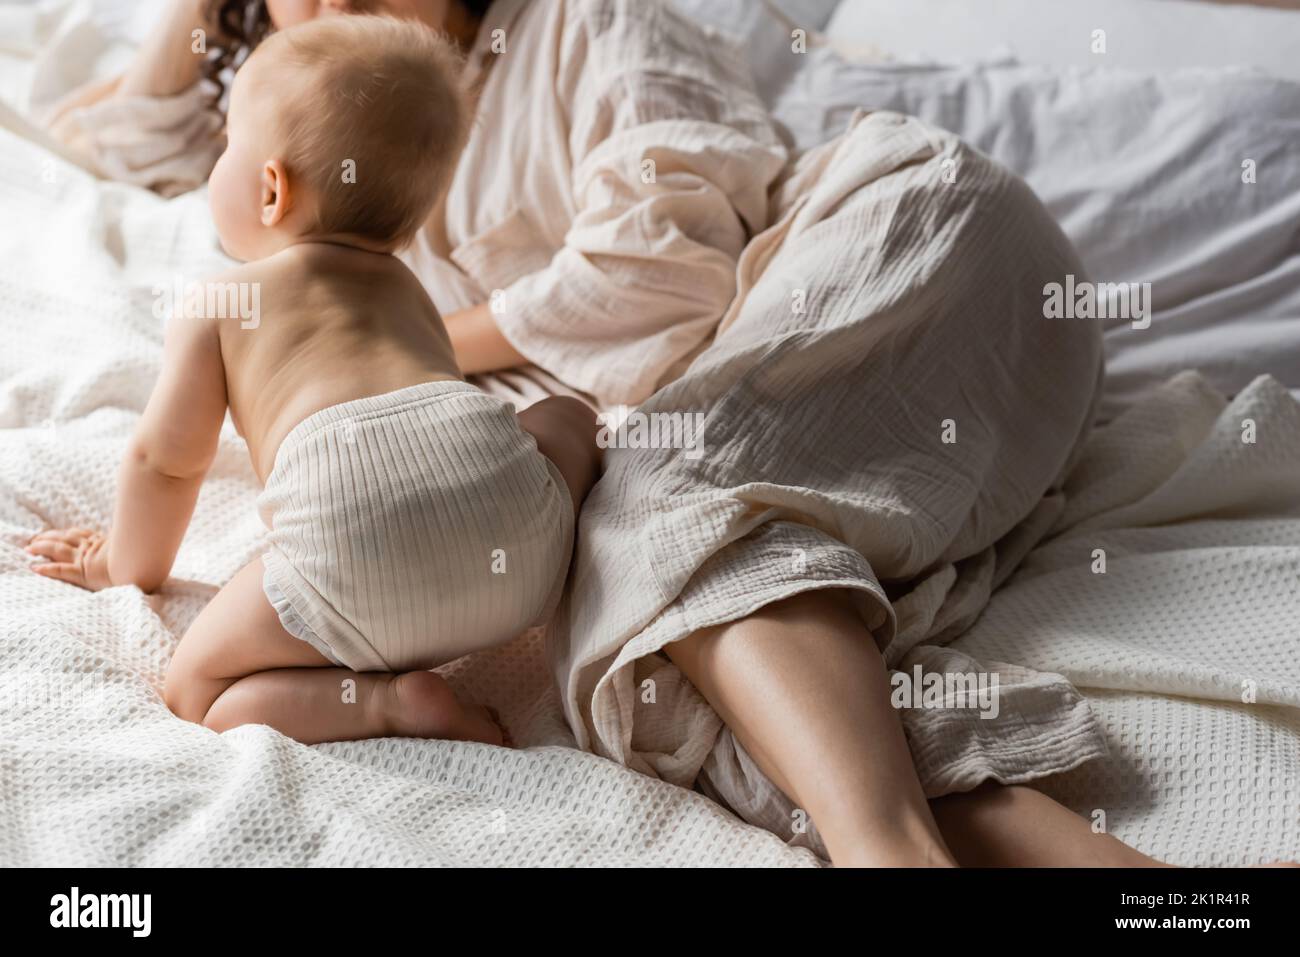 vue rognée de la mère dans les vêtements de détente couchés près de la fille de bébé sur le lit, image de stock Banque D'Images